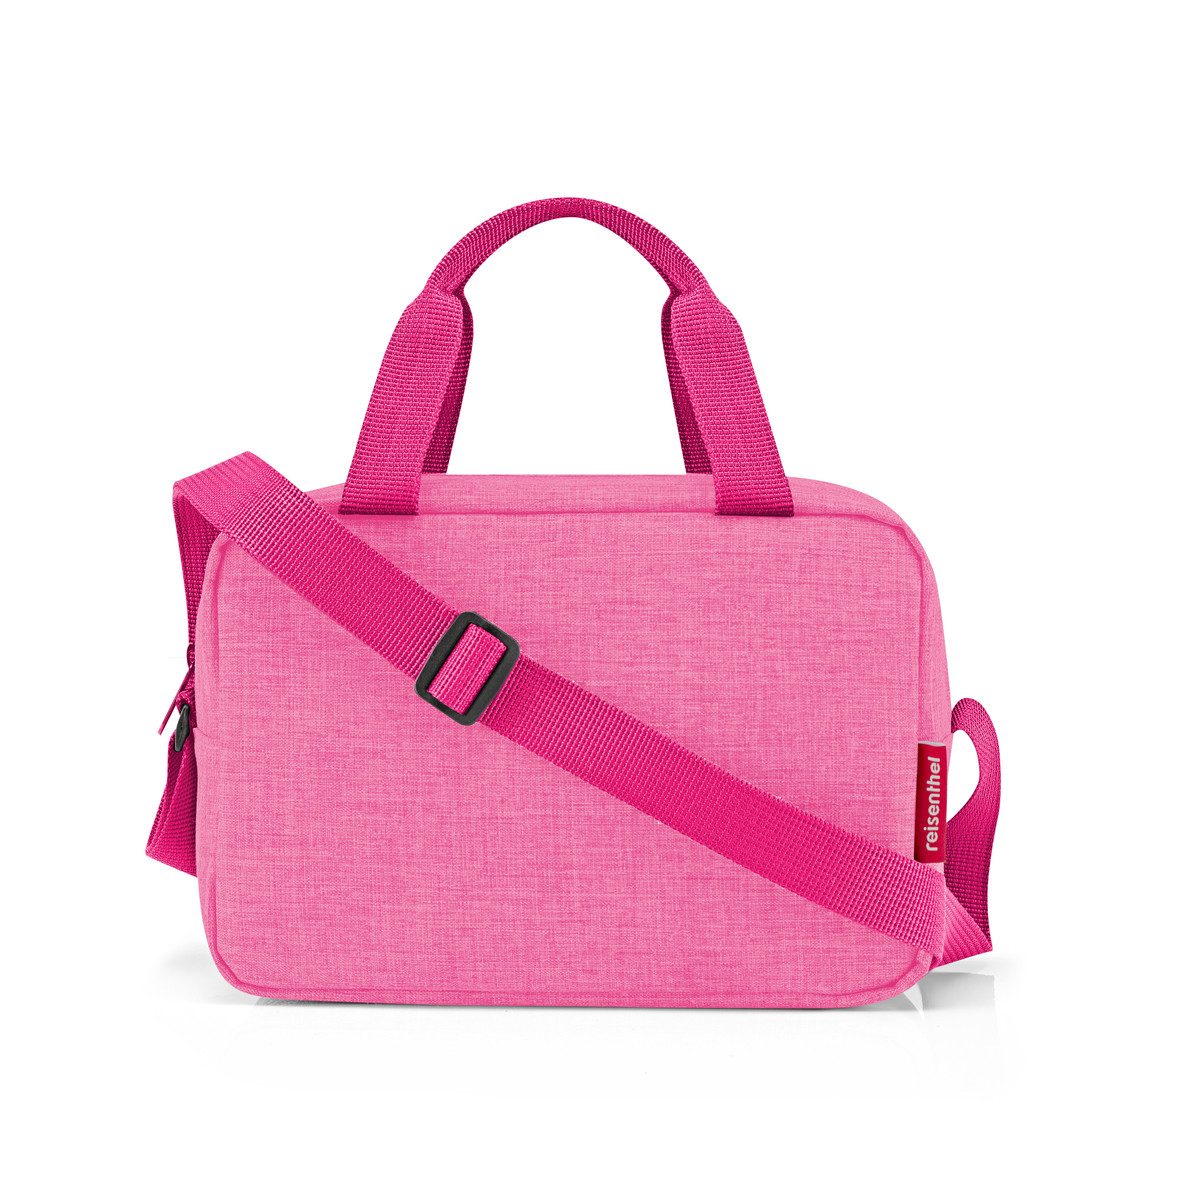 REISENTHEL® Einkaufsshopper coolerbag to-go twist pink